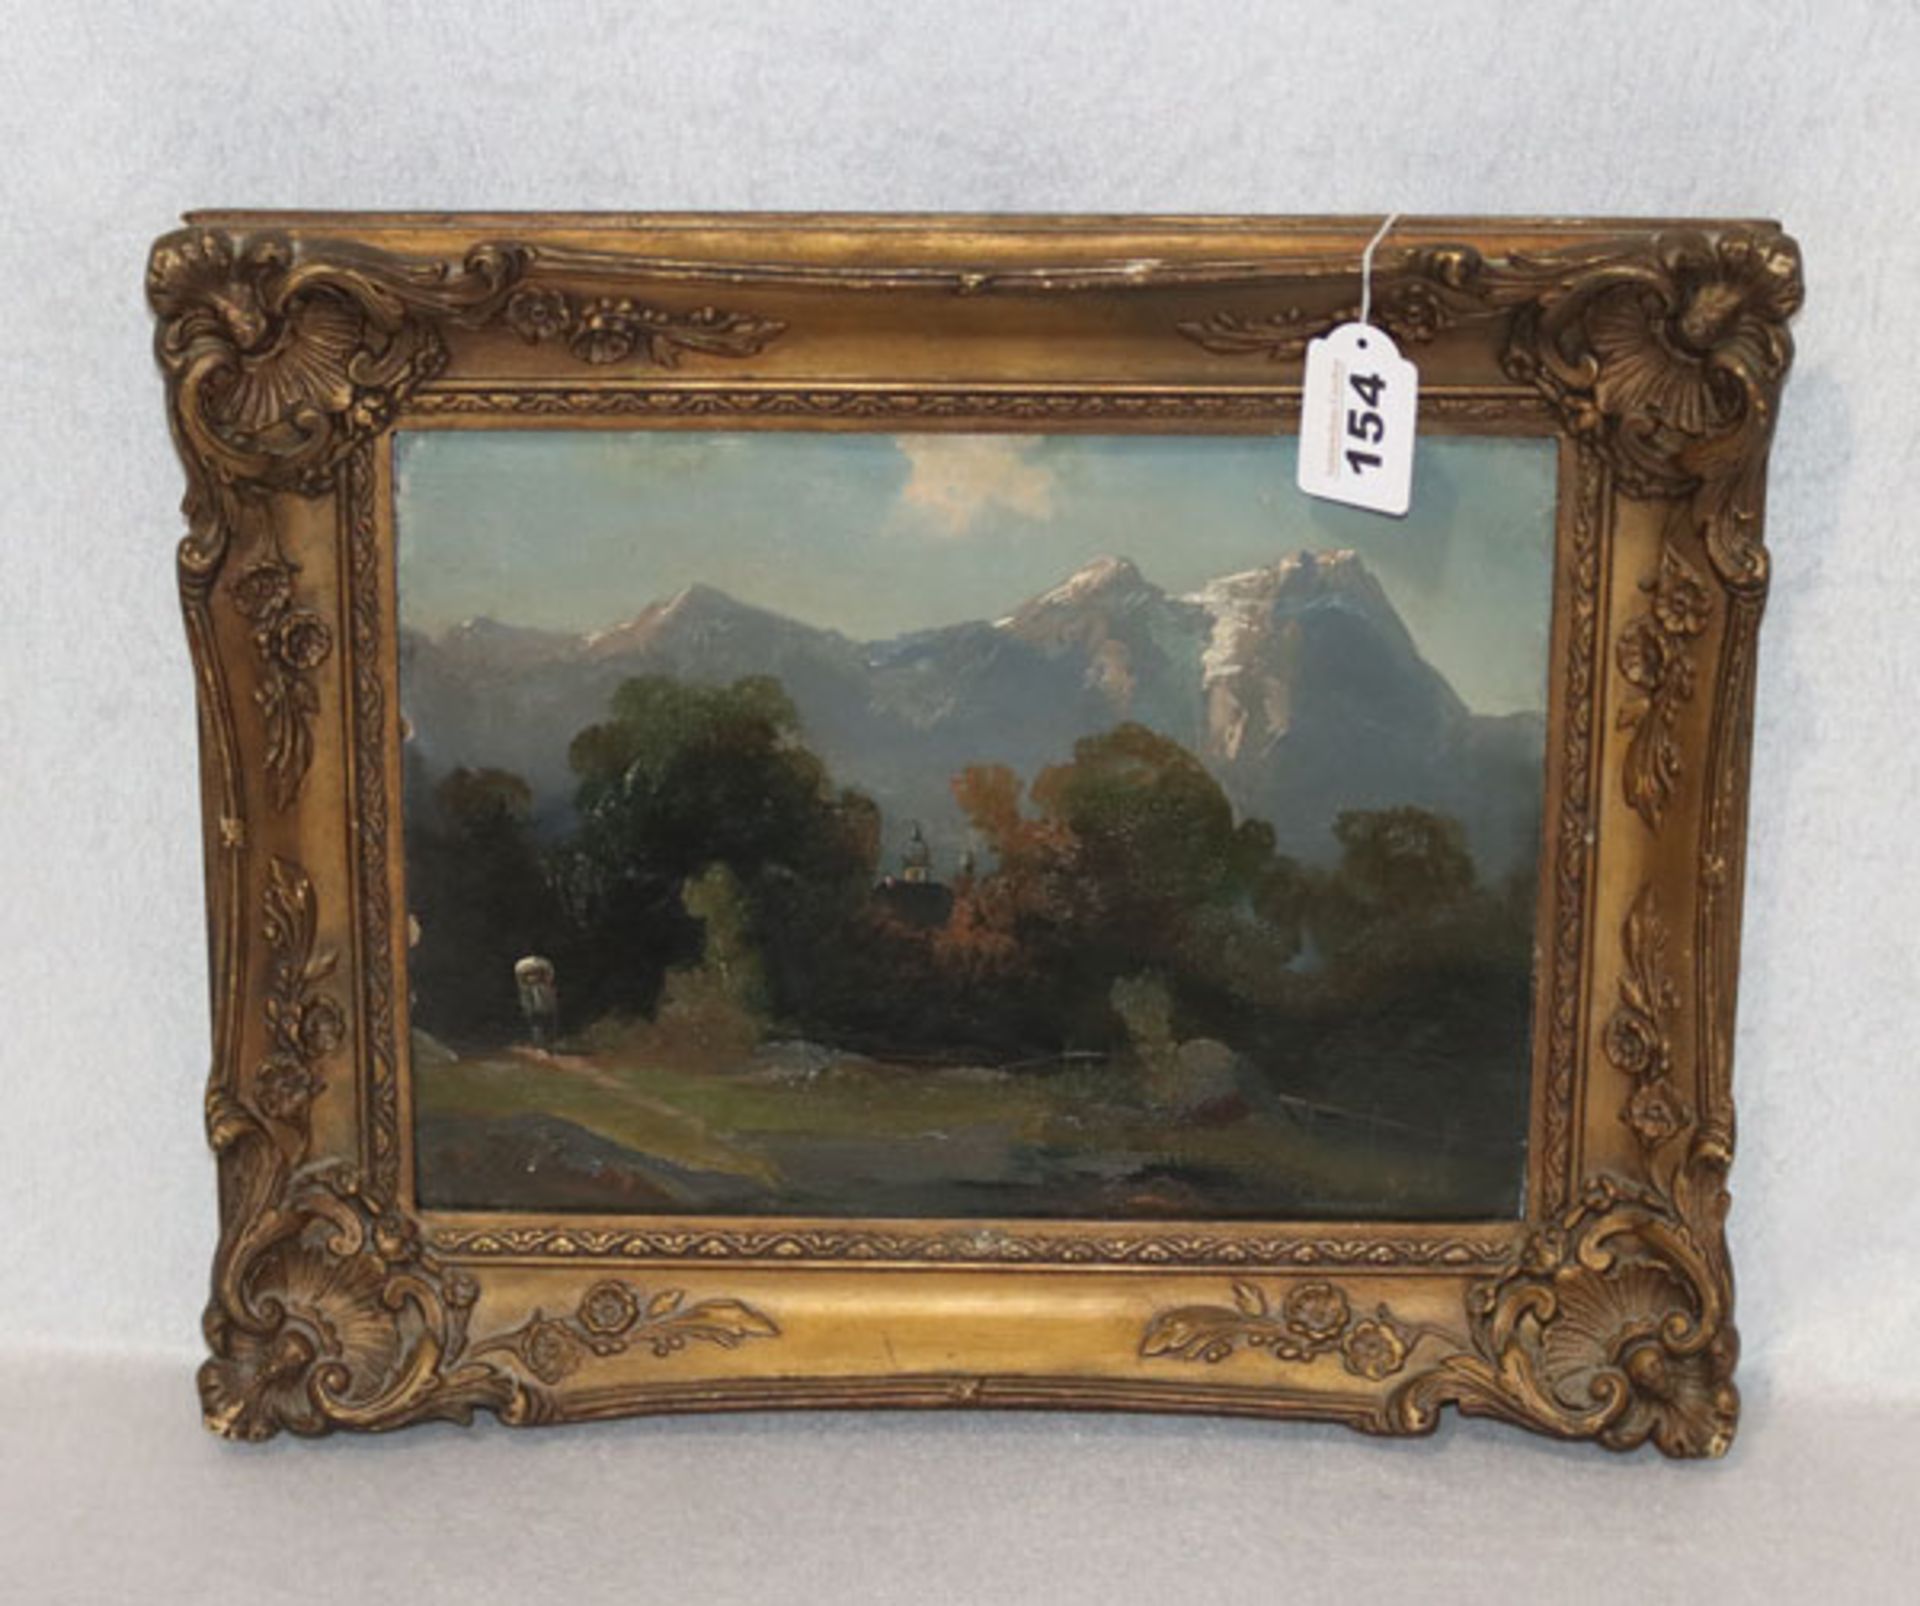 Gemälde ÖL/Malkarton 'Blick auf das Wettersteingebirge', monogrammiert L 86, Gemälderand beschädigt,